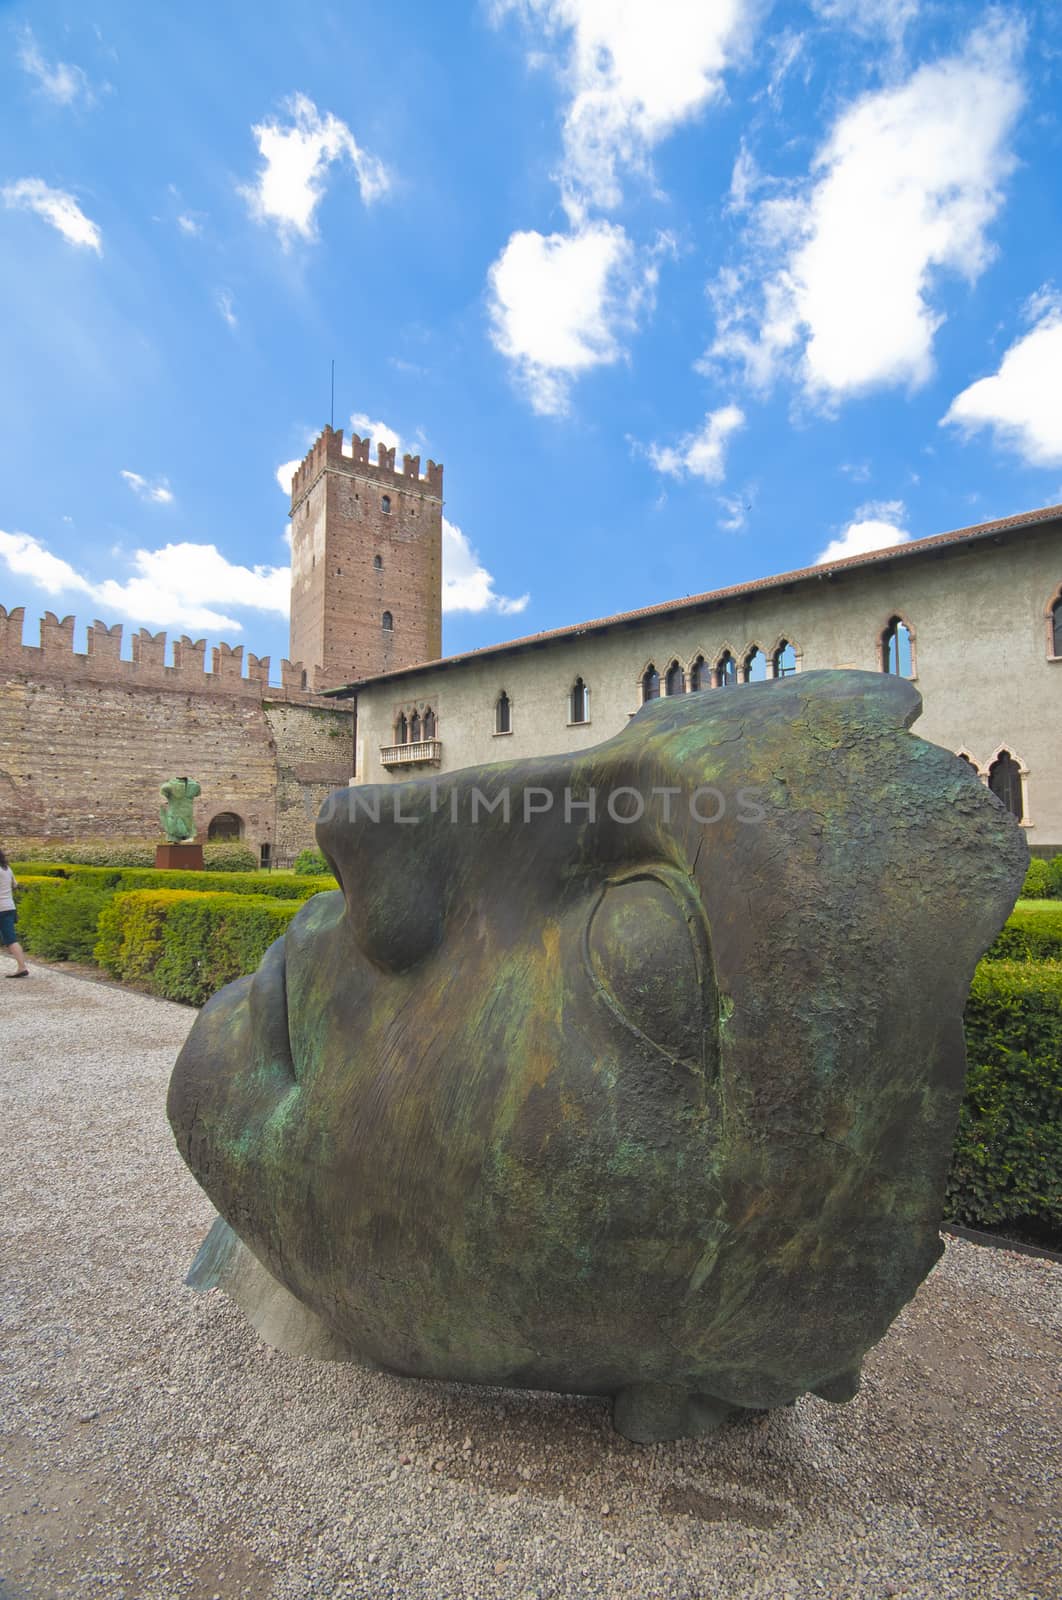 Sculpture in Castelvecchio by Yorgy67